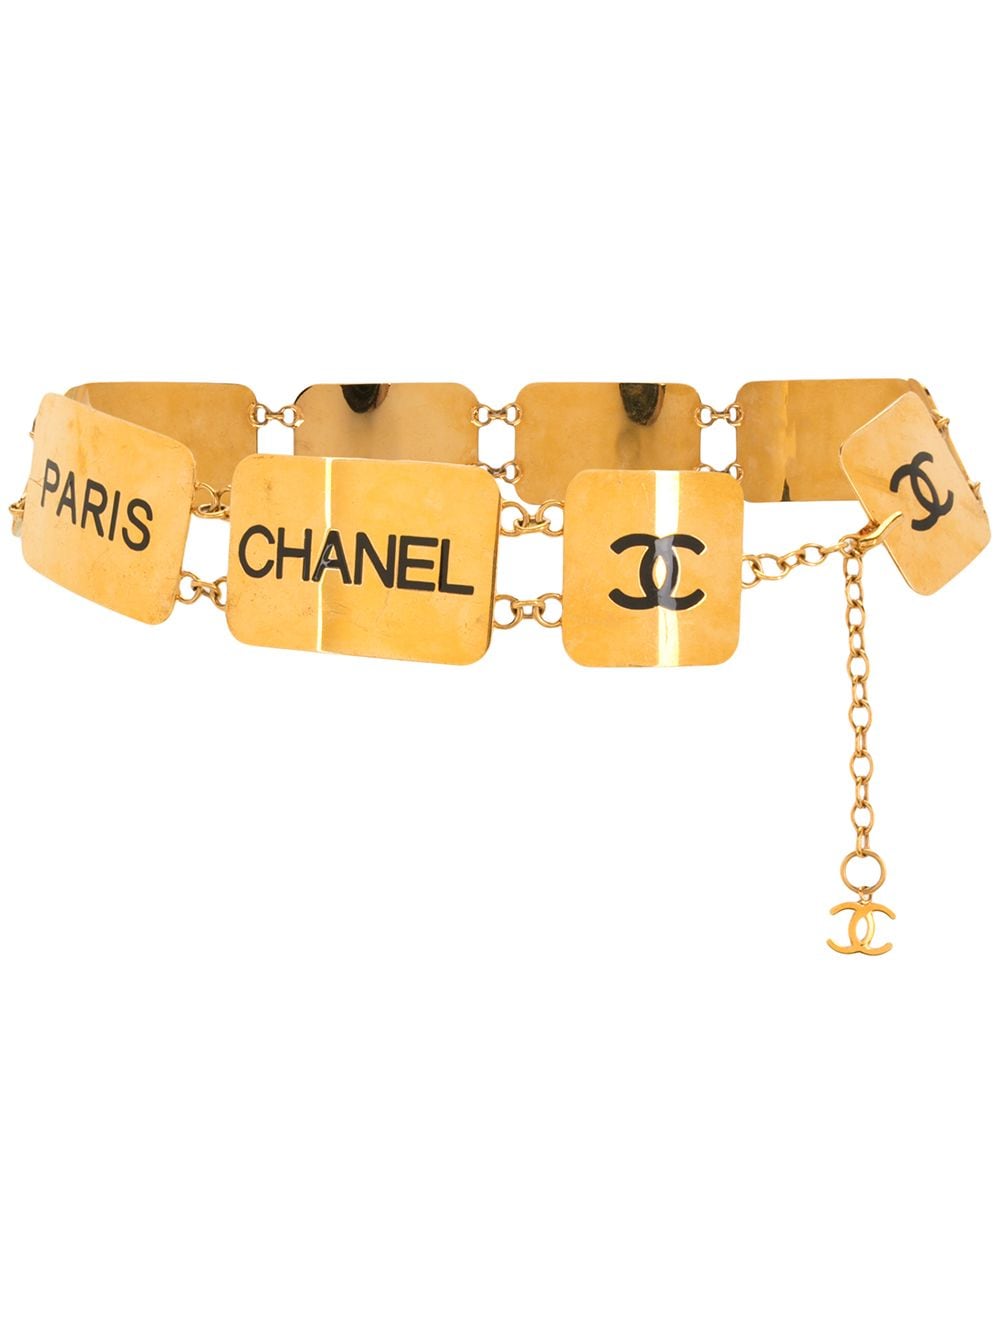 фото Chanel pre-owned цепочный ремень 1993-го года с логотипом cc